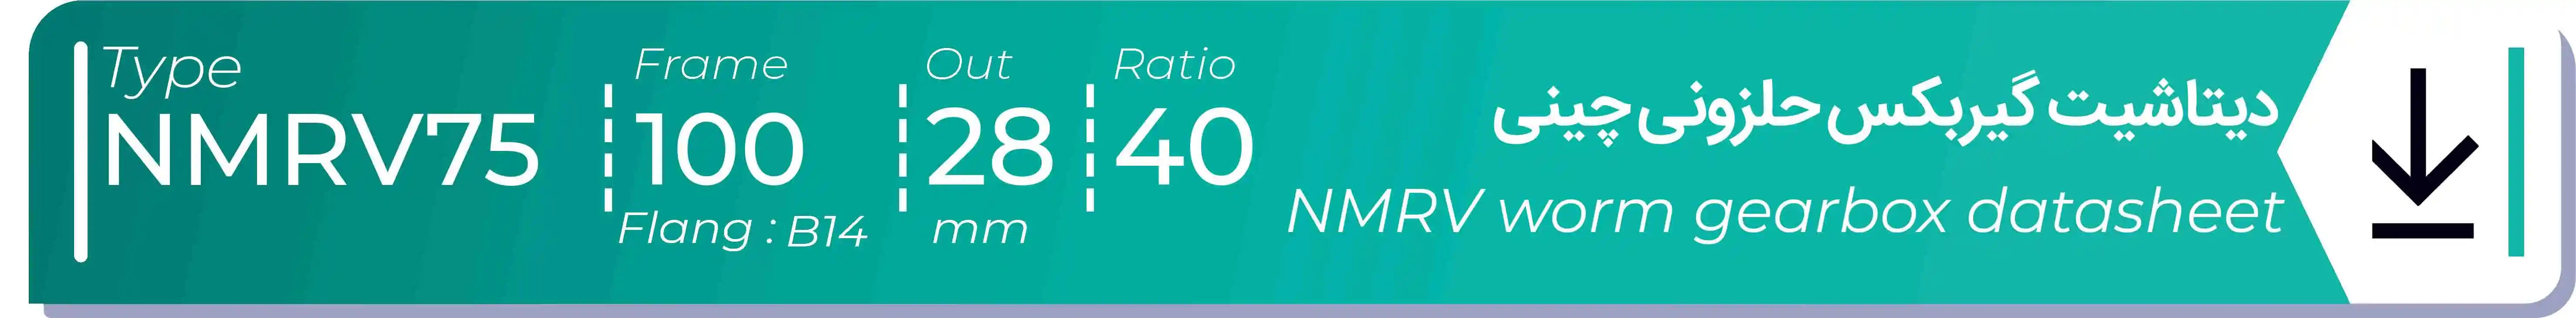  دیتاشیت و مشخصات فنی گیربکس حلزونی چینی   NMRV75  -  با خروجی 28- میلی متر و نسبت40 و فریم 100